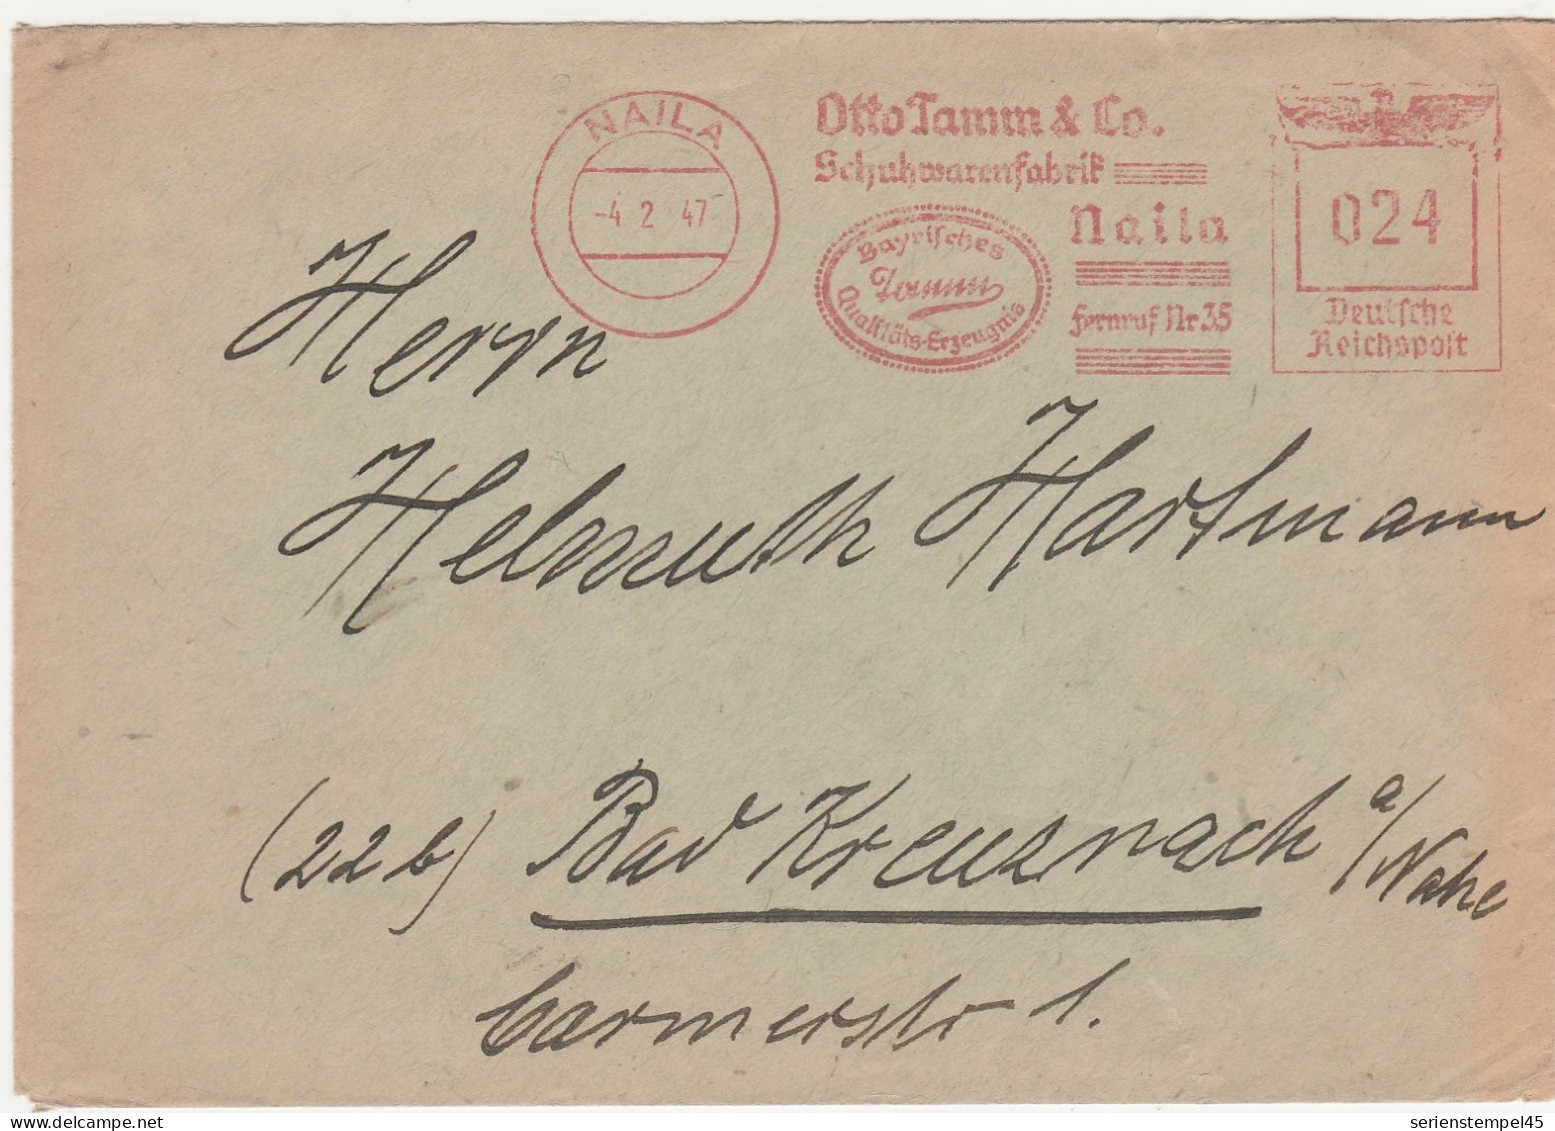 Deutschland 1947 Brief Mit Freistempel Naila Otto Tamm & Co Schuhwarenfabrik LK Hof Alter Stempelkopf - Notausgaben Amerikanische Zone